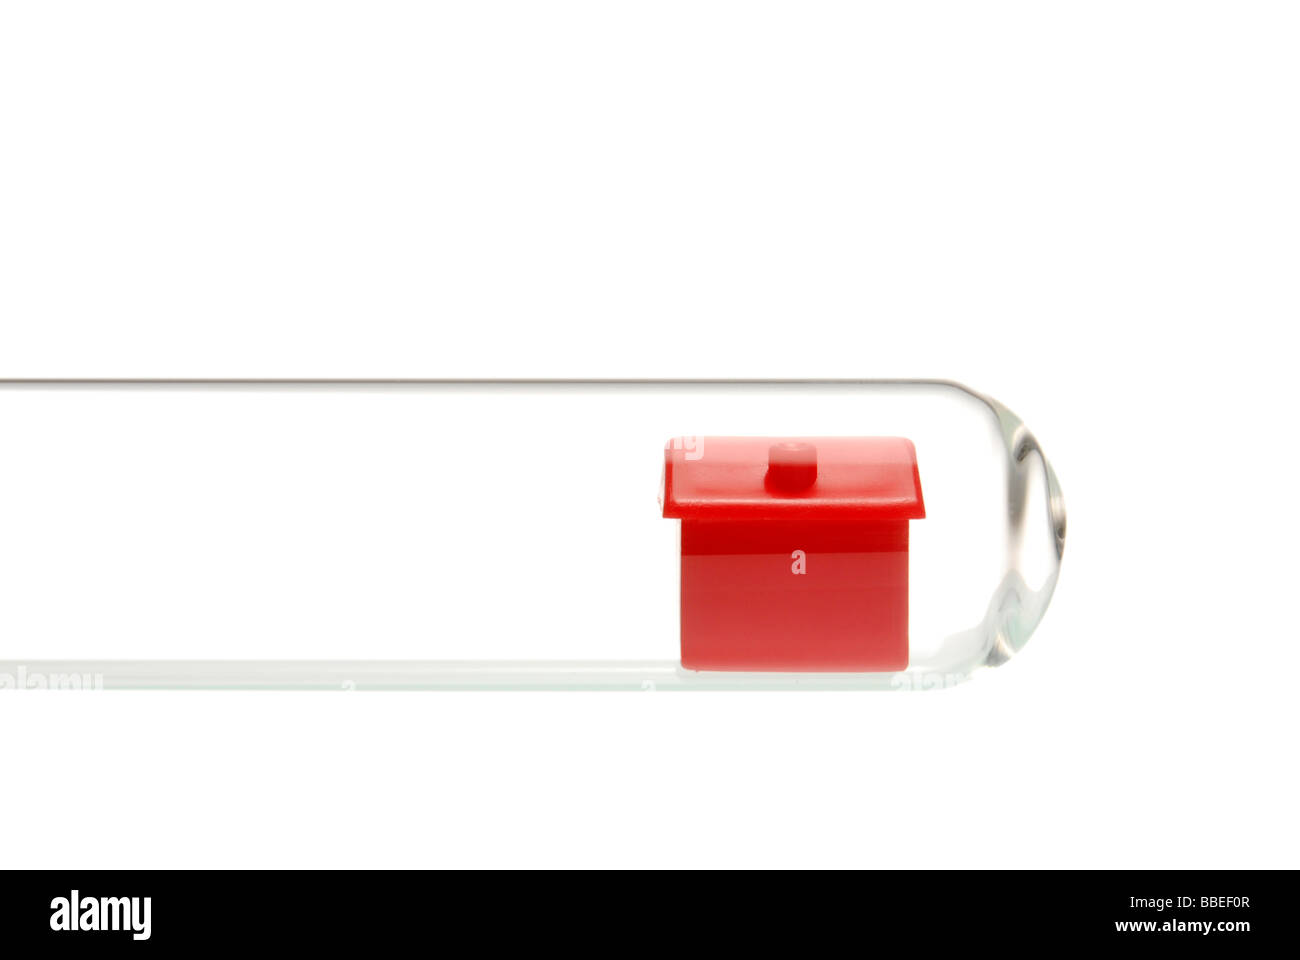 Maison miniature dans un tube à essai, image symbolique pour l'analyse de l'immobilier Banque D'Images